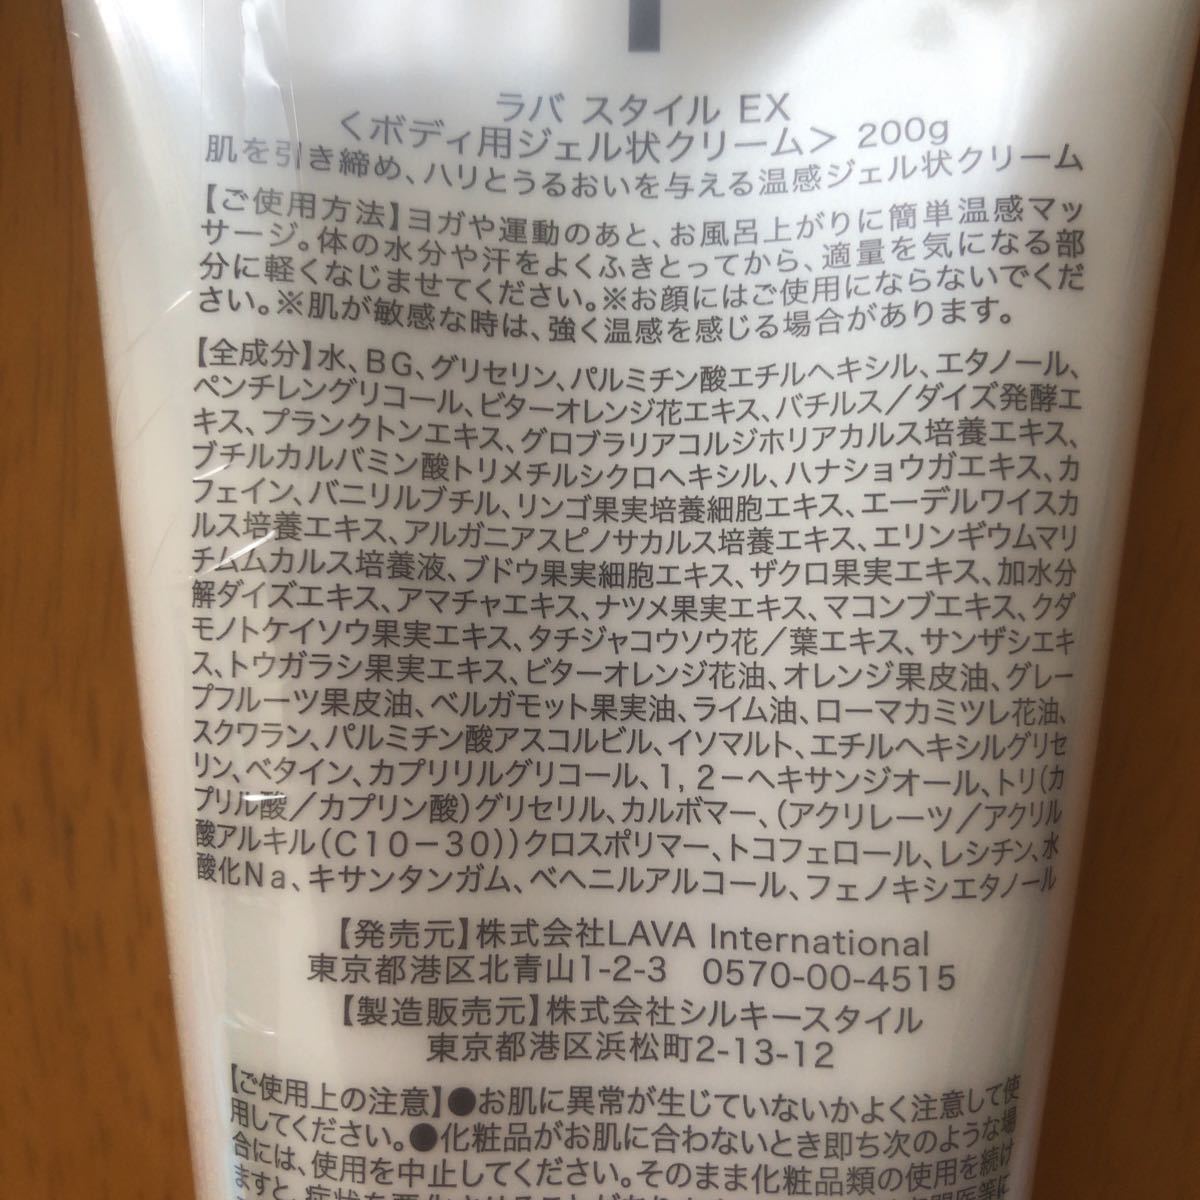 ラバ スタイル EX hot gel cream〈ボディ用ジェル状クリーム200g〉